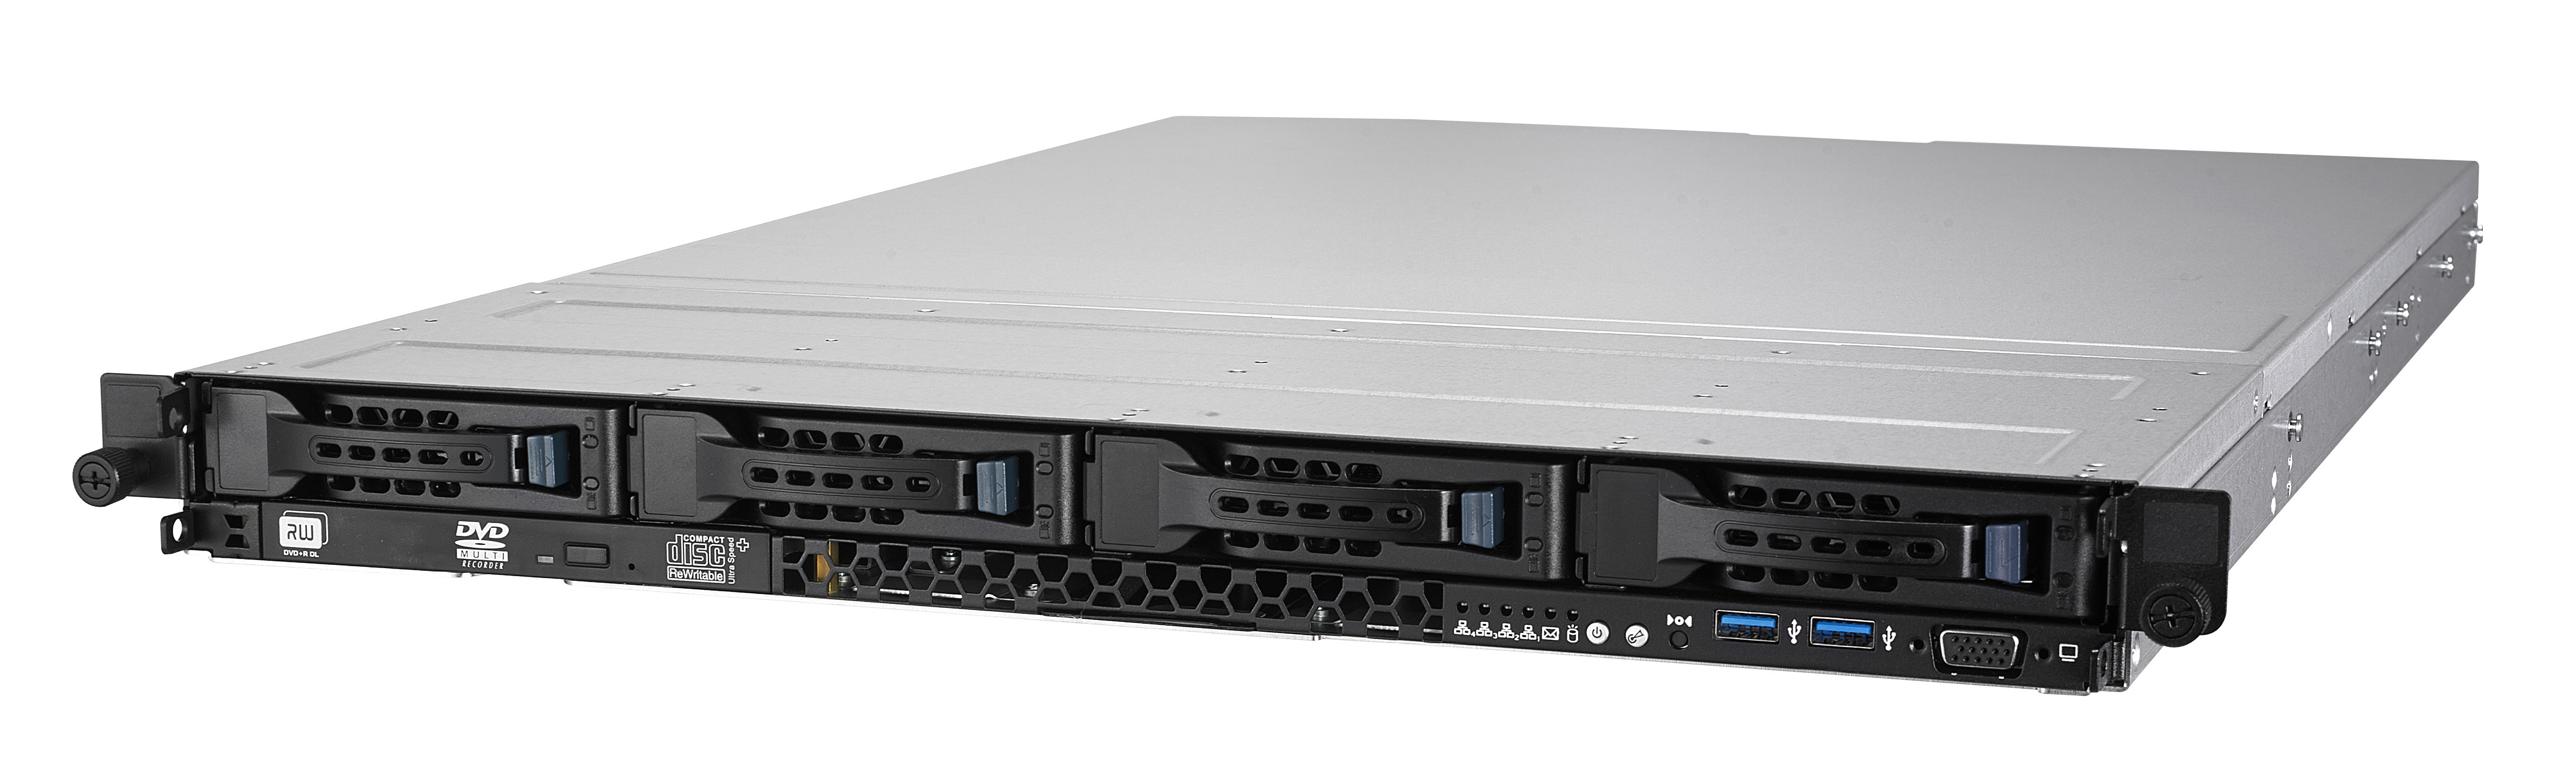 Серверная платформа ASUS RS700-E9-RS4 (ASMB9-iKVM)// 1U, Z11PP-D24, 2 x Socket P,3072GB max, 4HDD Hot-swap+2HDD 2,5", 2x800/550W, CPU FAN